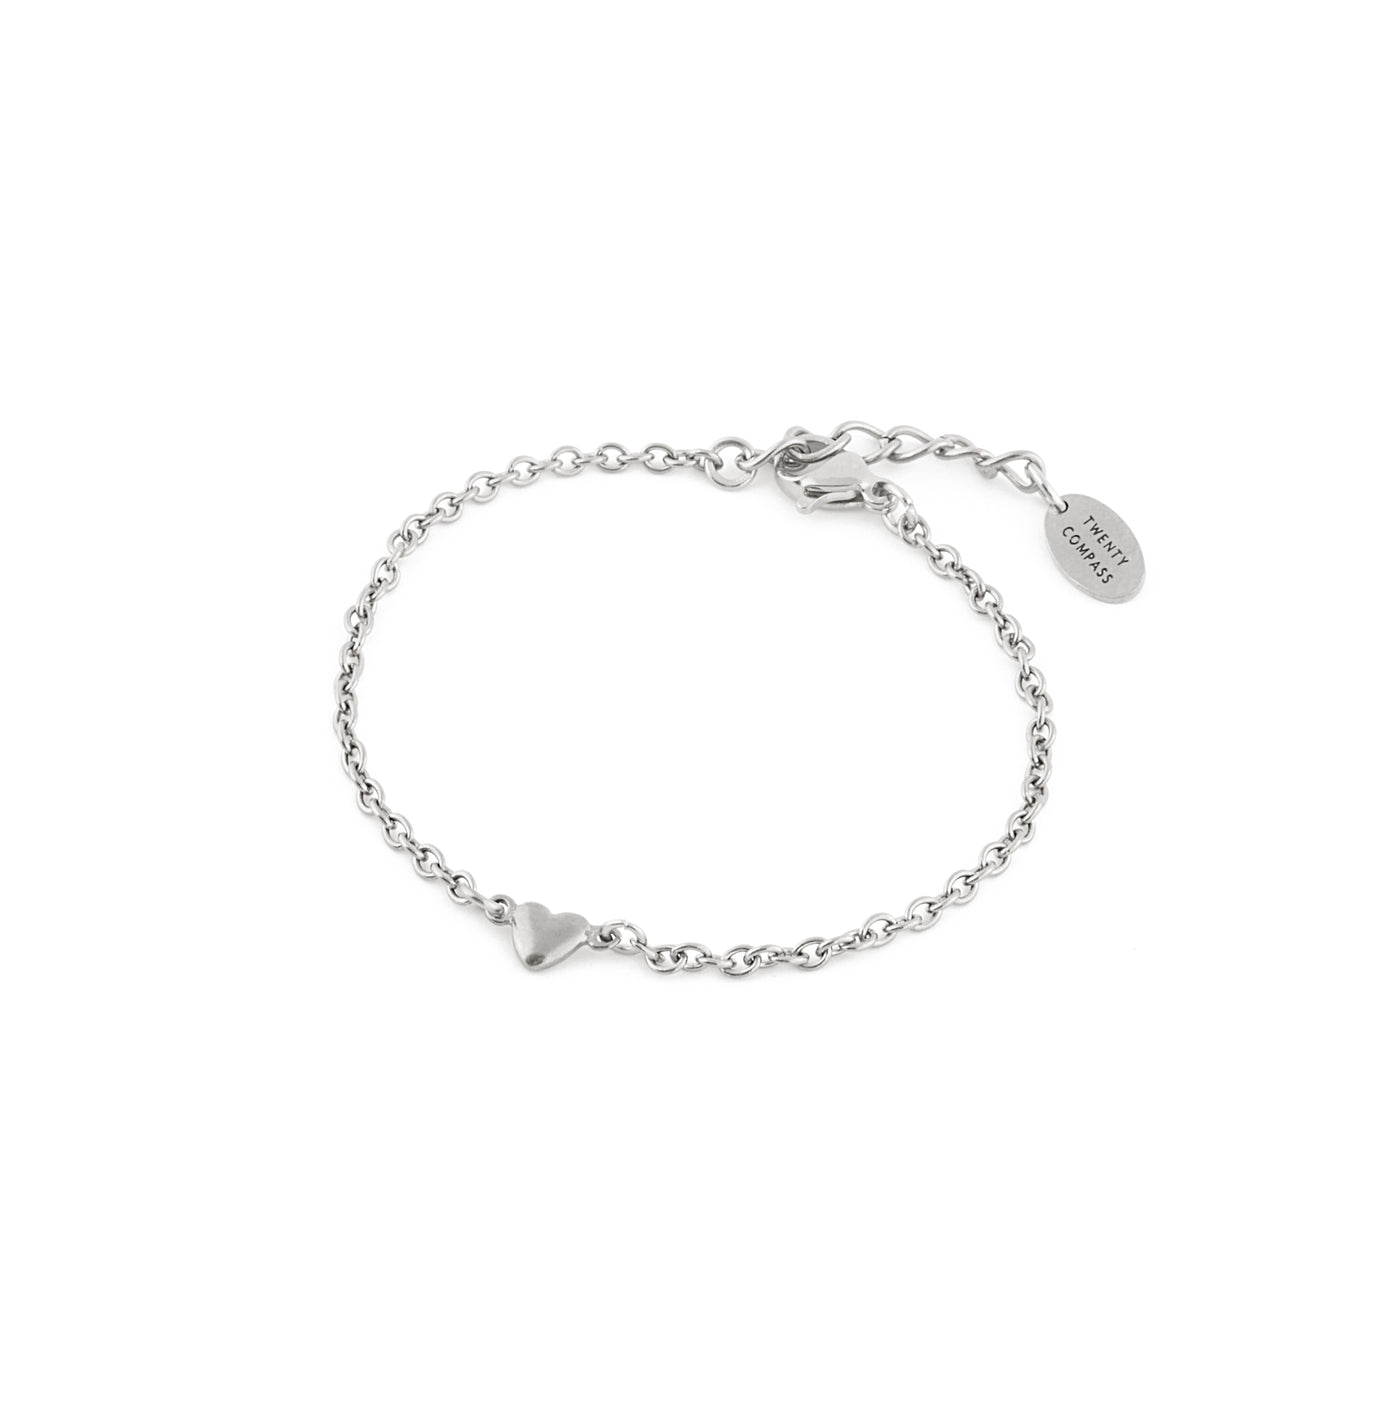 Hopeless Romantic Bracelet - Silver Hopeless Romantic Bracelet - Silver